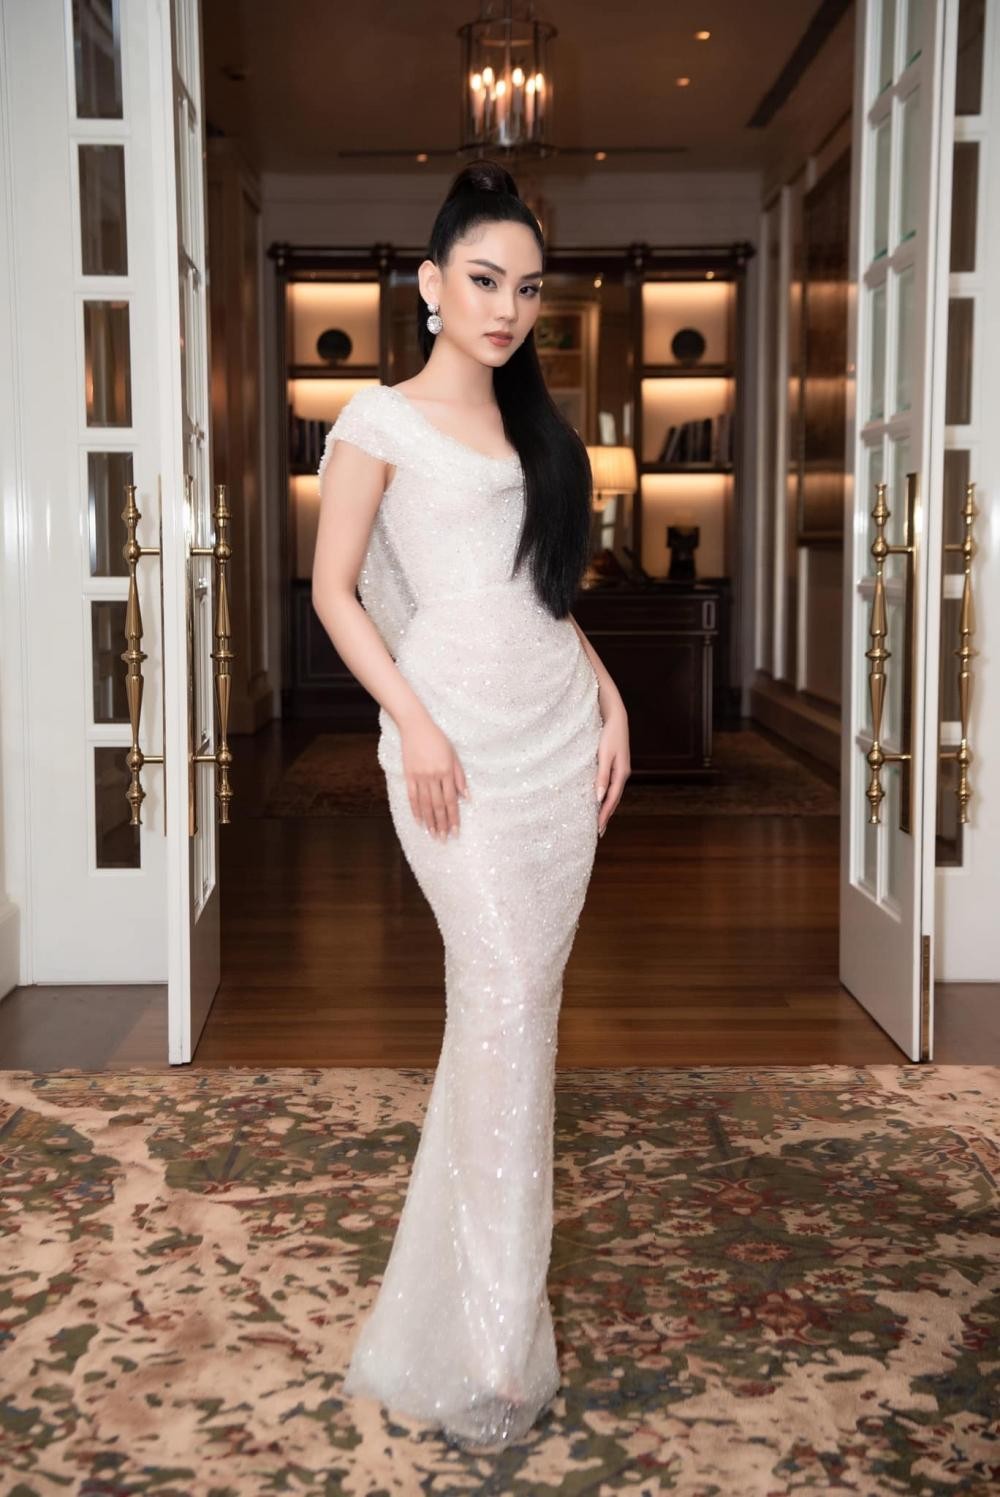 Hoa hậu Mai Phương cực khéo chọn đầm dạ hội, thiết kế nào cũng tôn dáng tuyệt đối ảnh 6